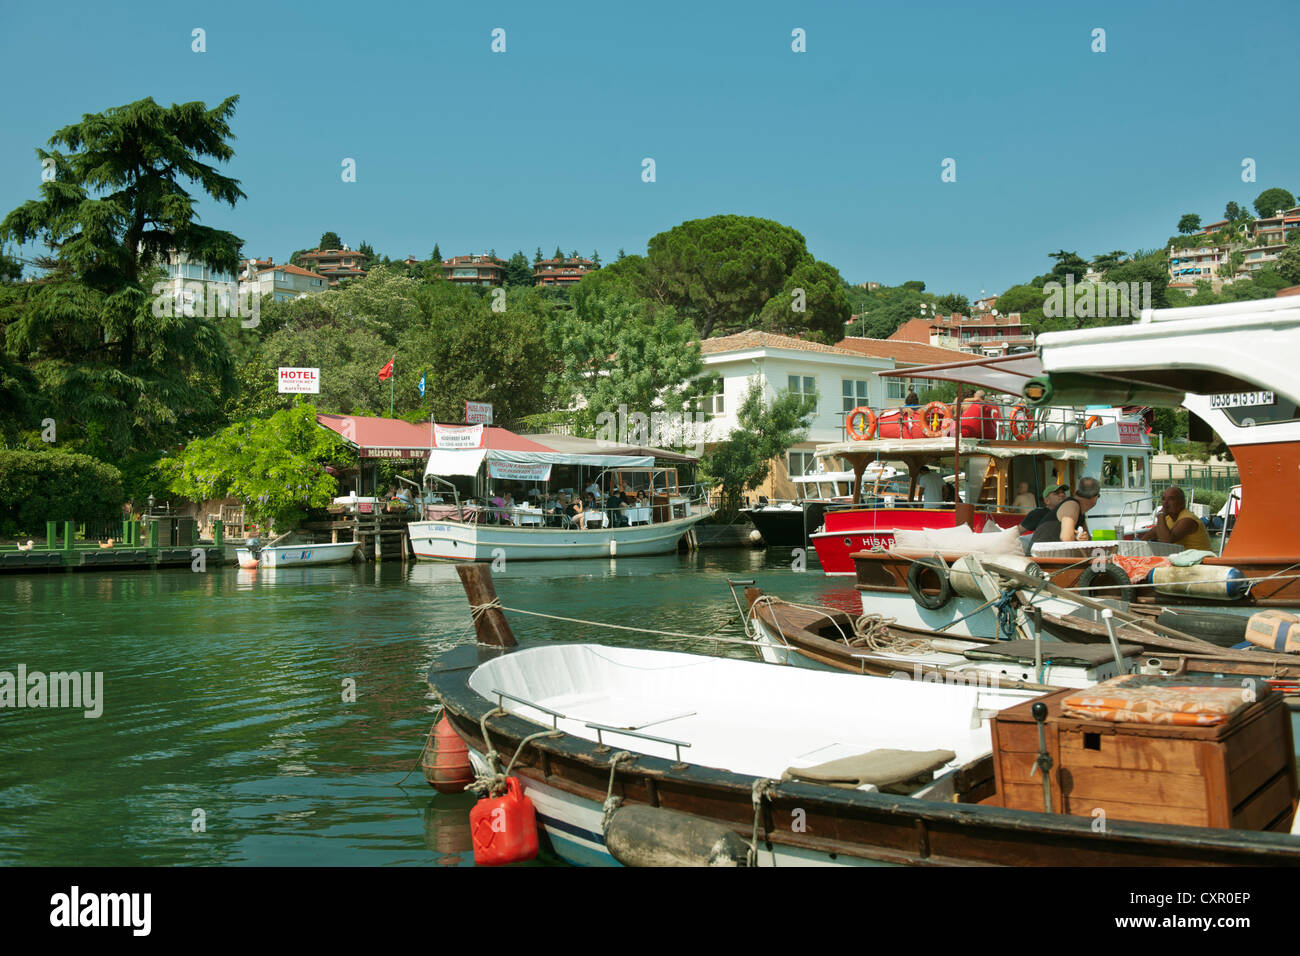 Türkei, Istanbul, Beykoz, Boote und Lokale am Kanal Göksu Deresi, bei der Festung Anadolu Hisari Stock Photo